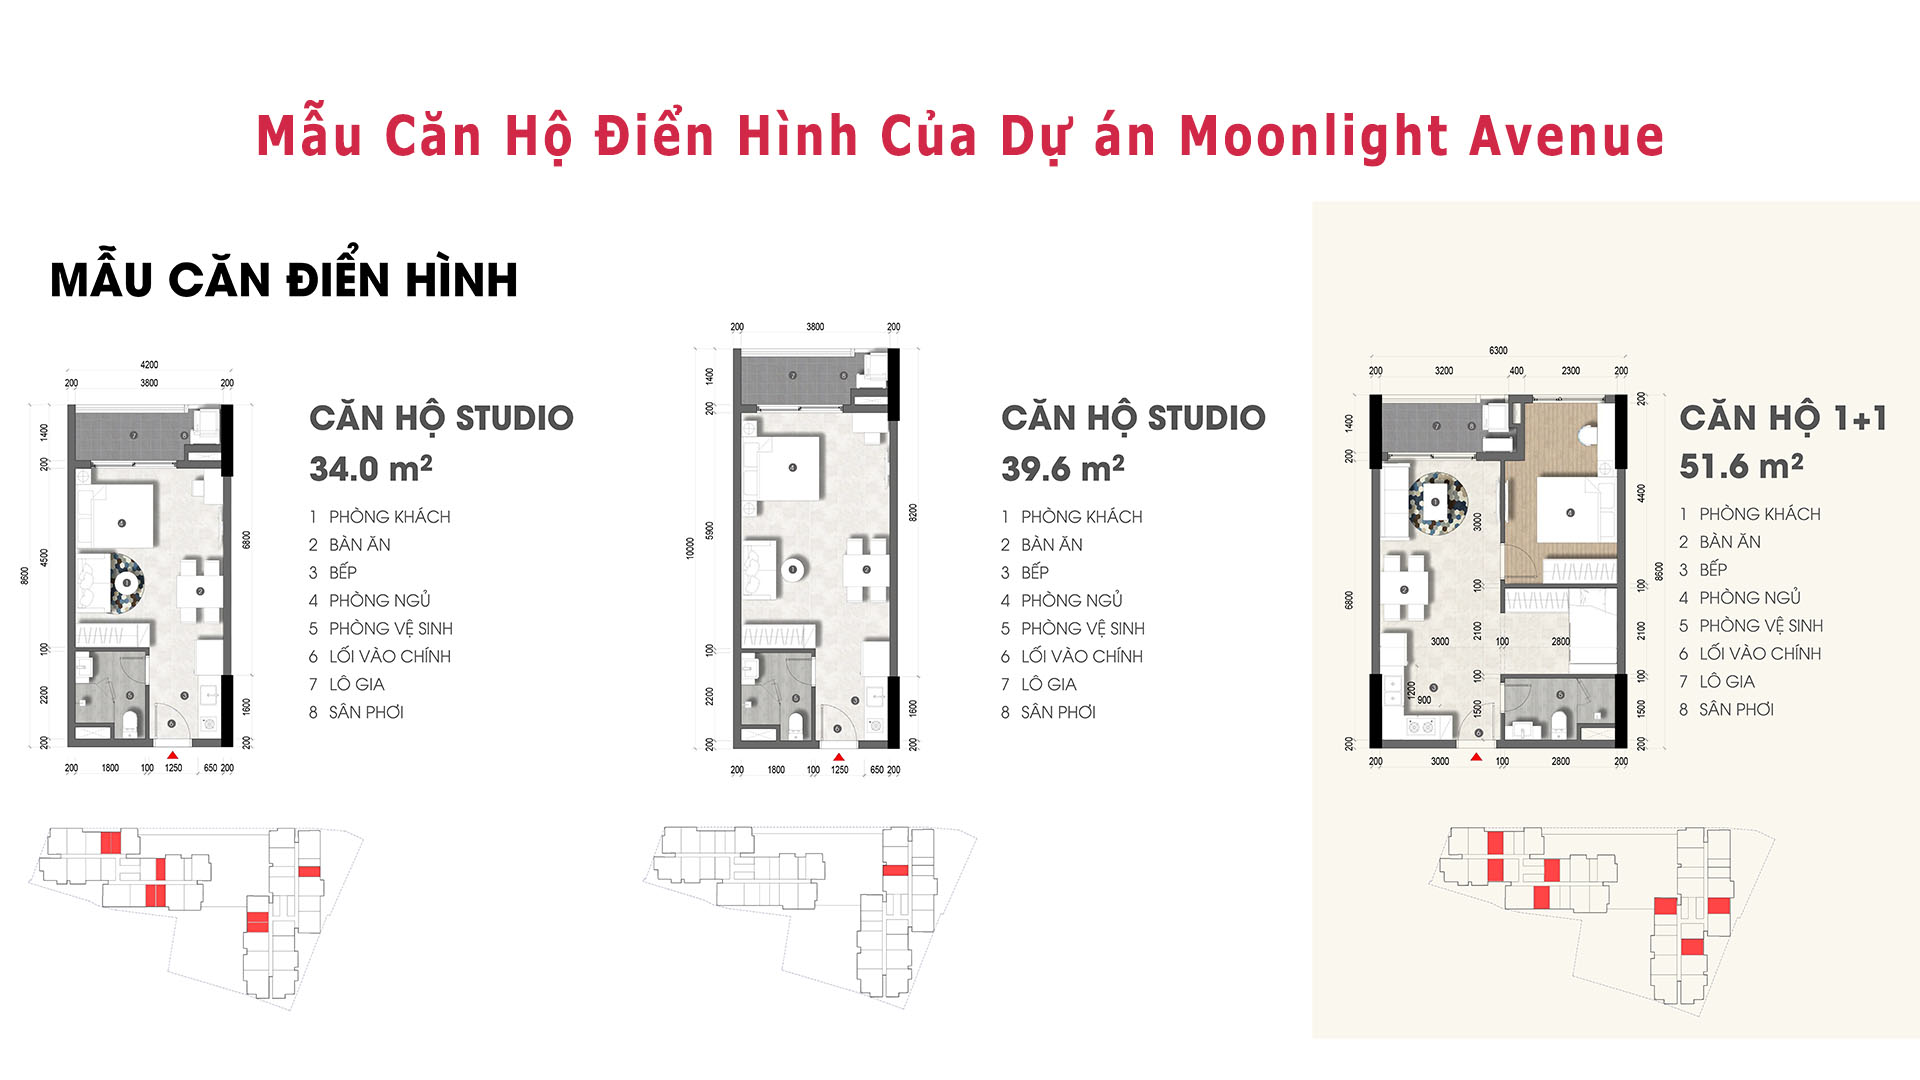 Mẫu Căn Hộ Studio và 1 Phòng NGủ Của Dự án Moonlight Avenue